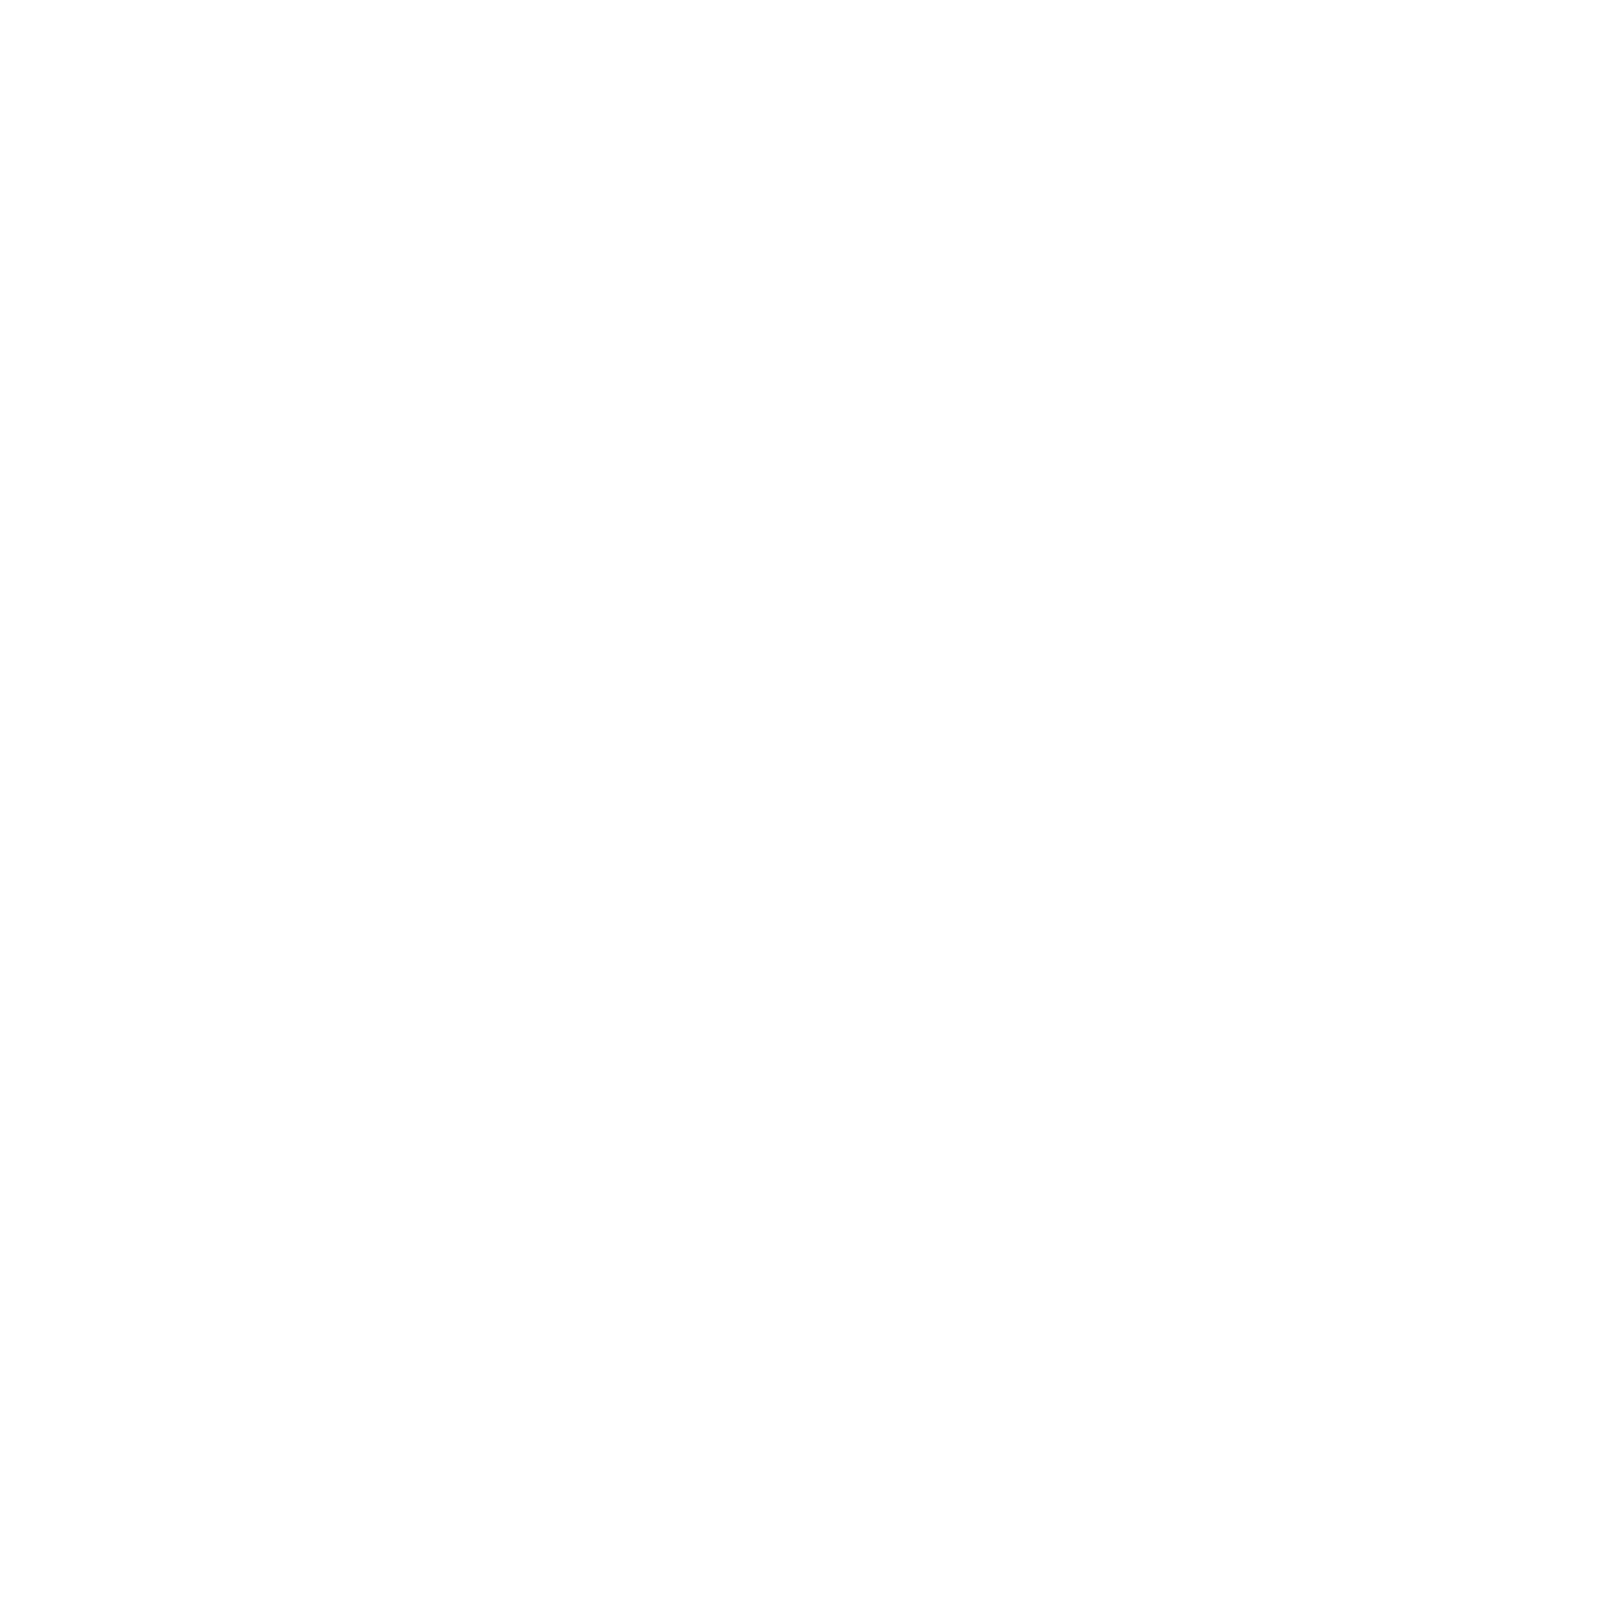 V/Line logo on a transparent backdrop.